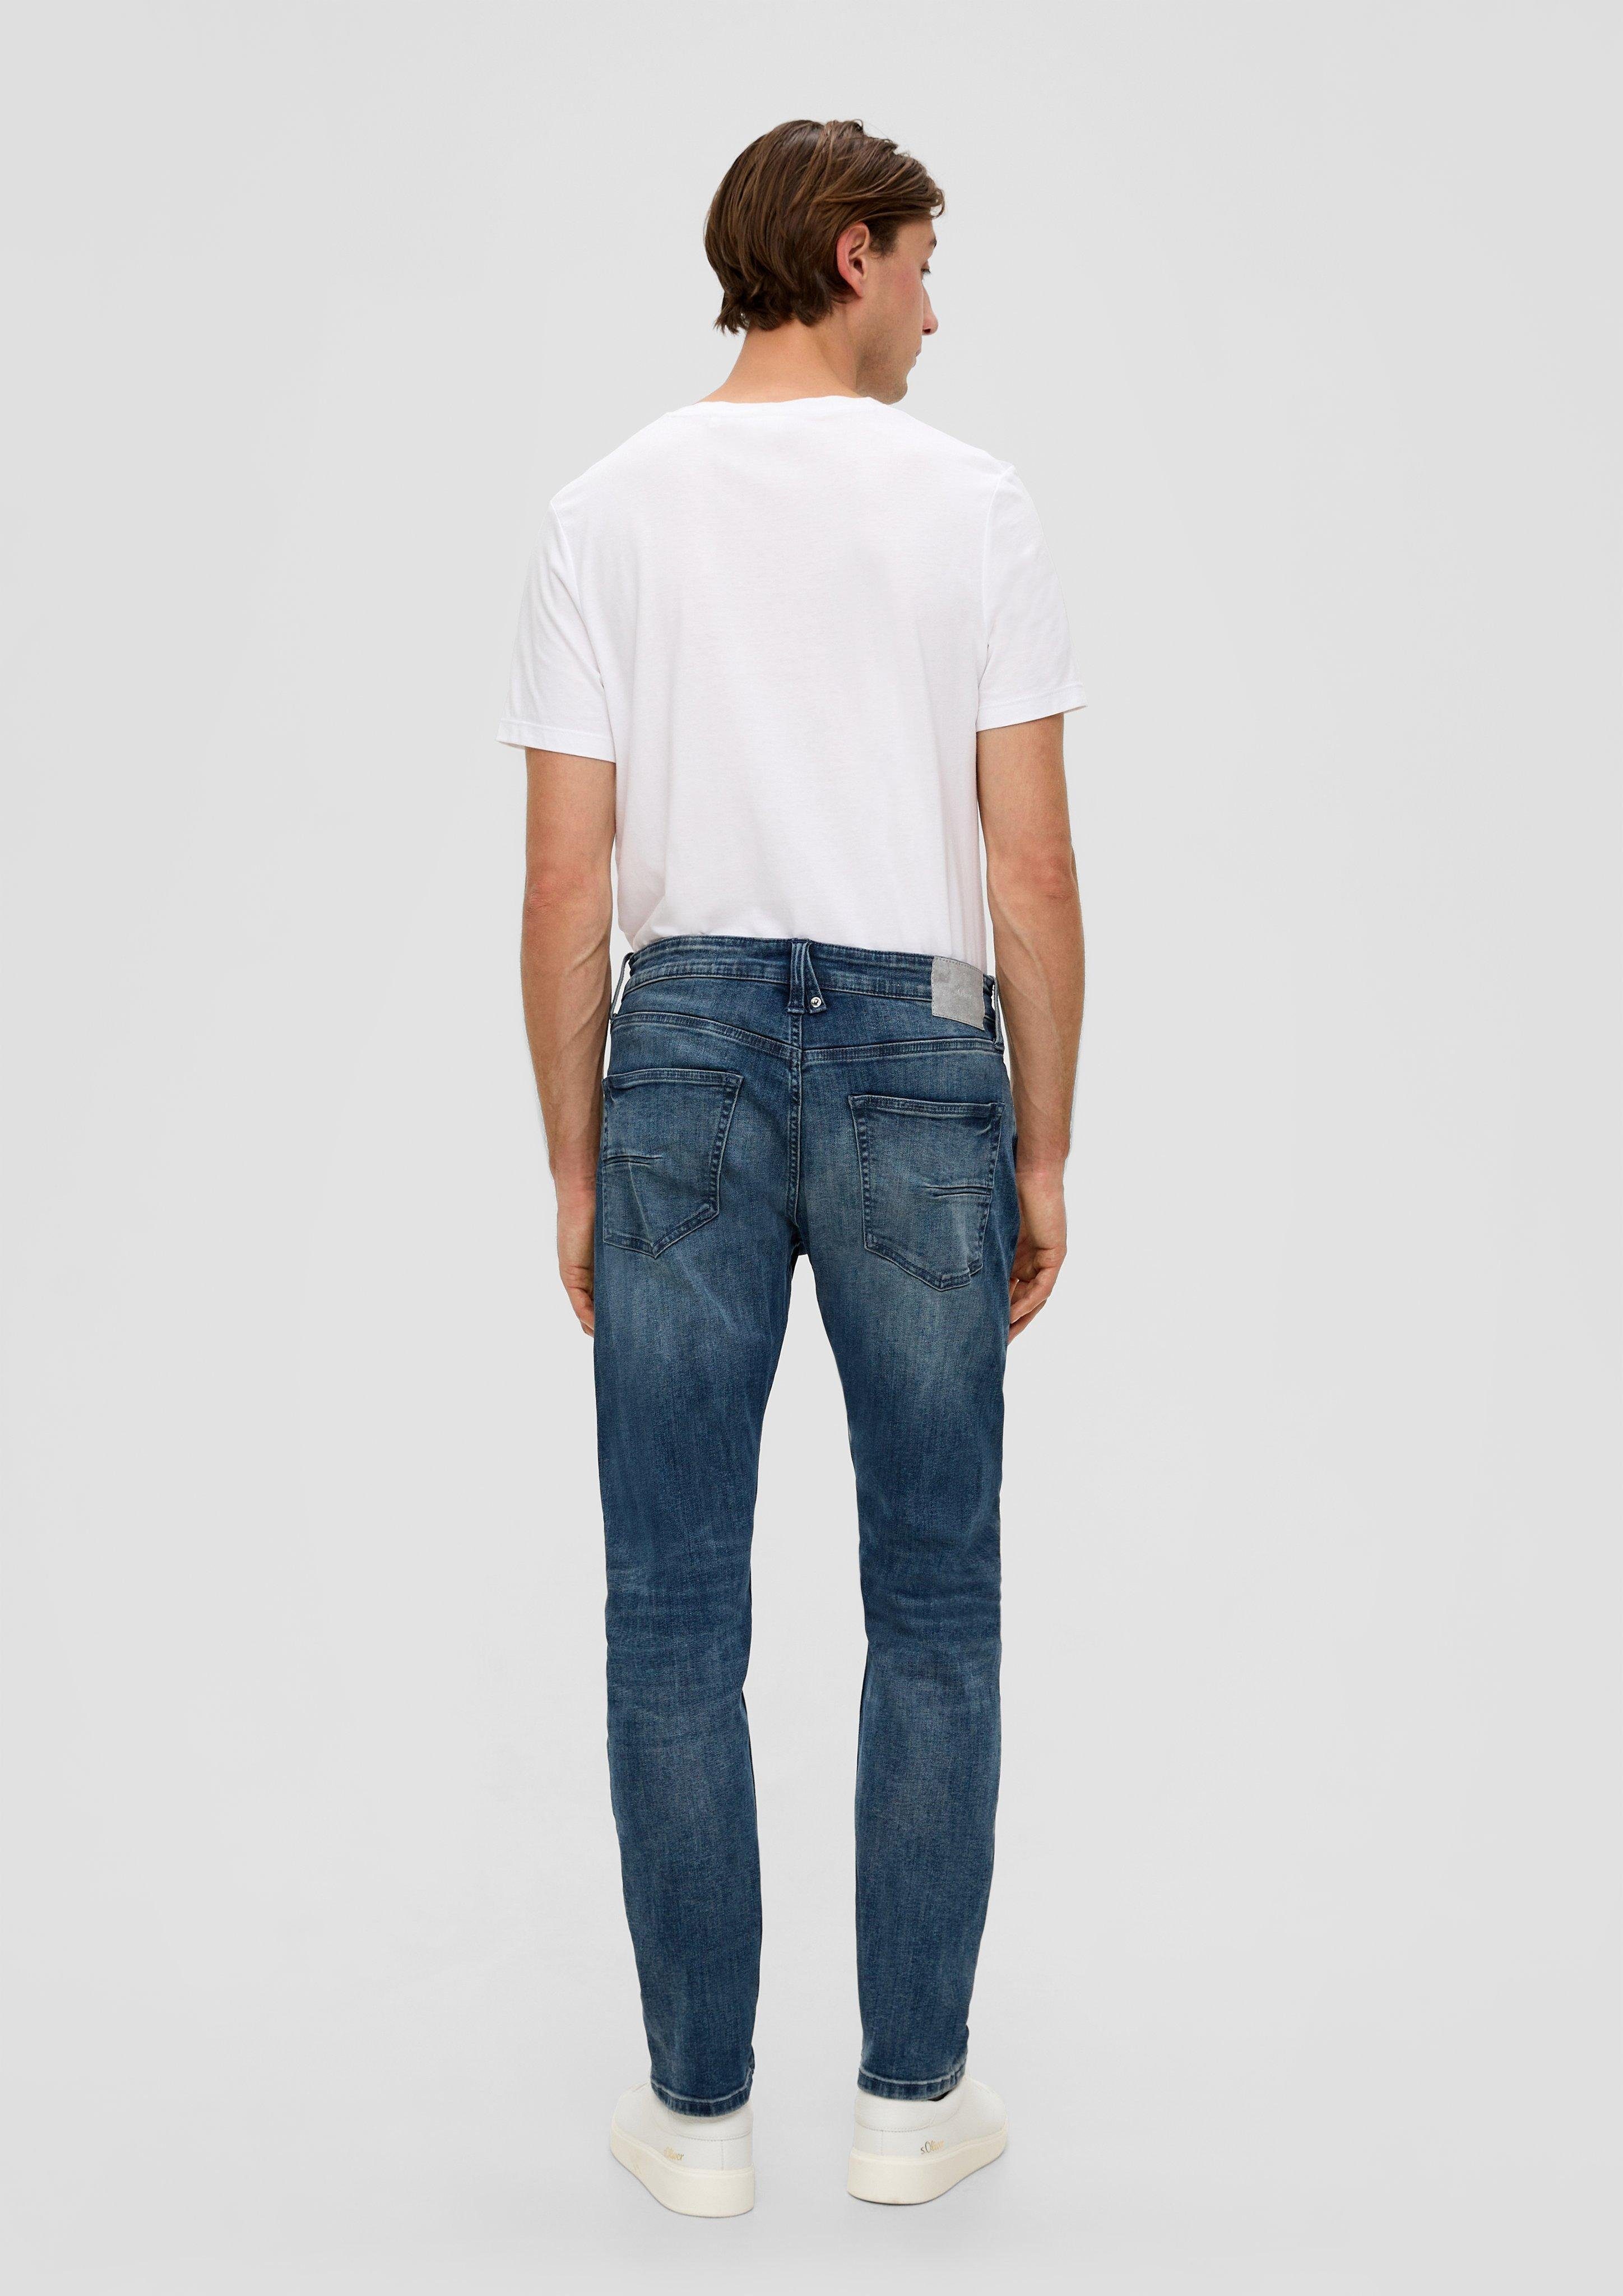 Waschung / / Mid Tapered Jeans Leder-Patch, 5-Pocket-Stil Fit / Rise Leg s.Oliver Regular / Stoffhose dunkelblau